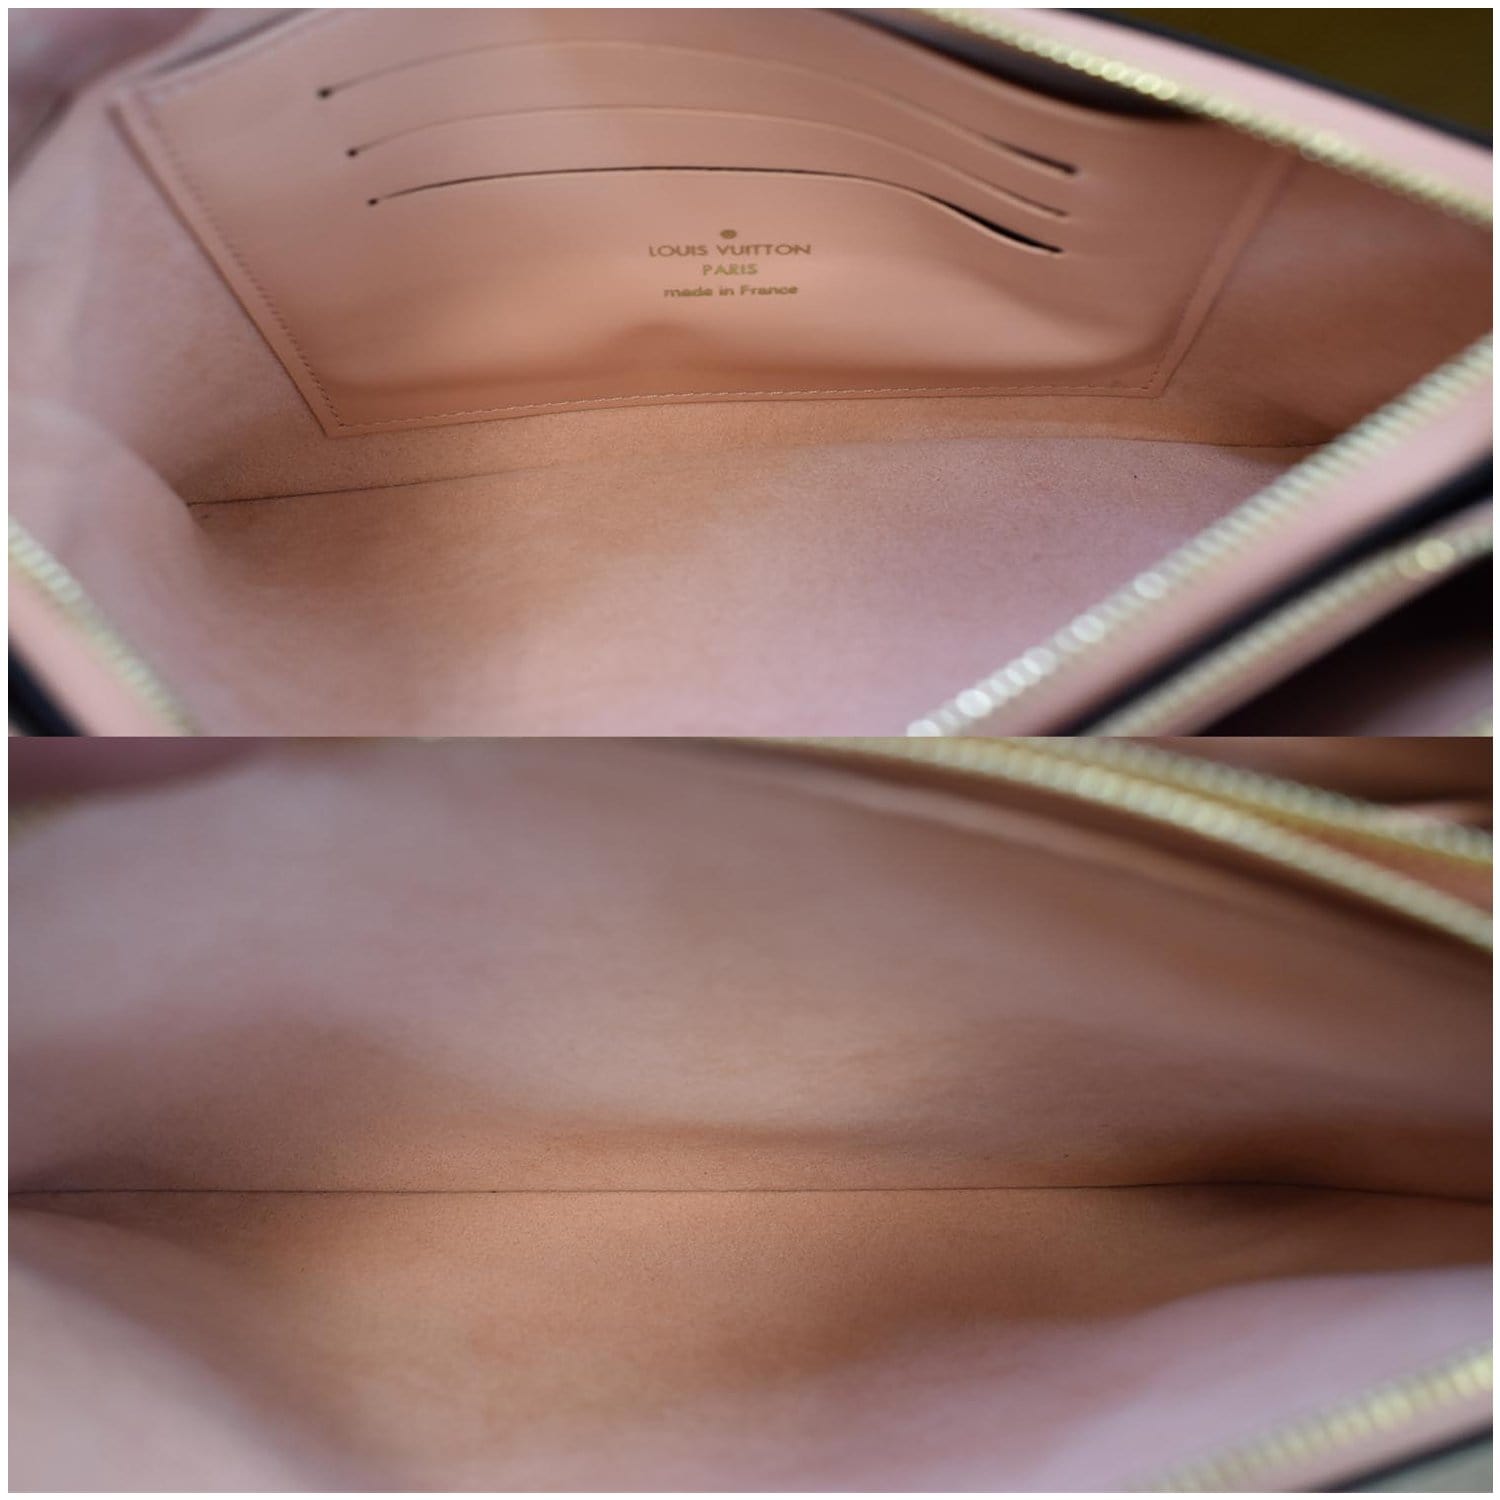 Double zip linen crossbody bag Louis Vuitton Brown in Linen - 21791254